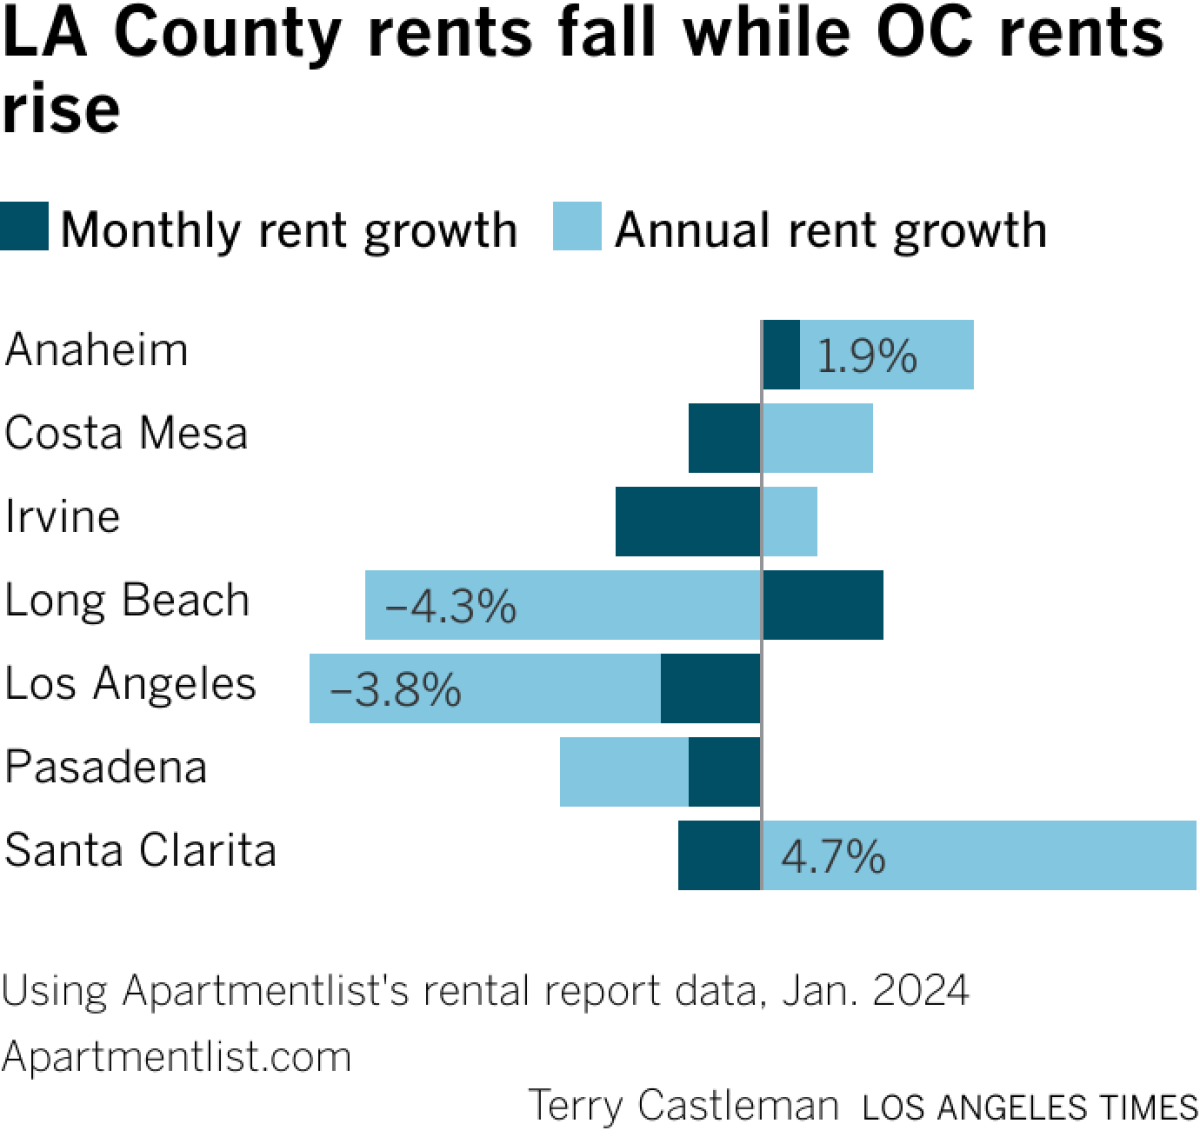 El gráfico muestra la caída de los precios de alquiler en Long Beach, Los Ángeles, mientras que los precios suben en Santa Clarita, Anaheim